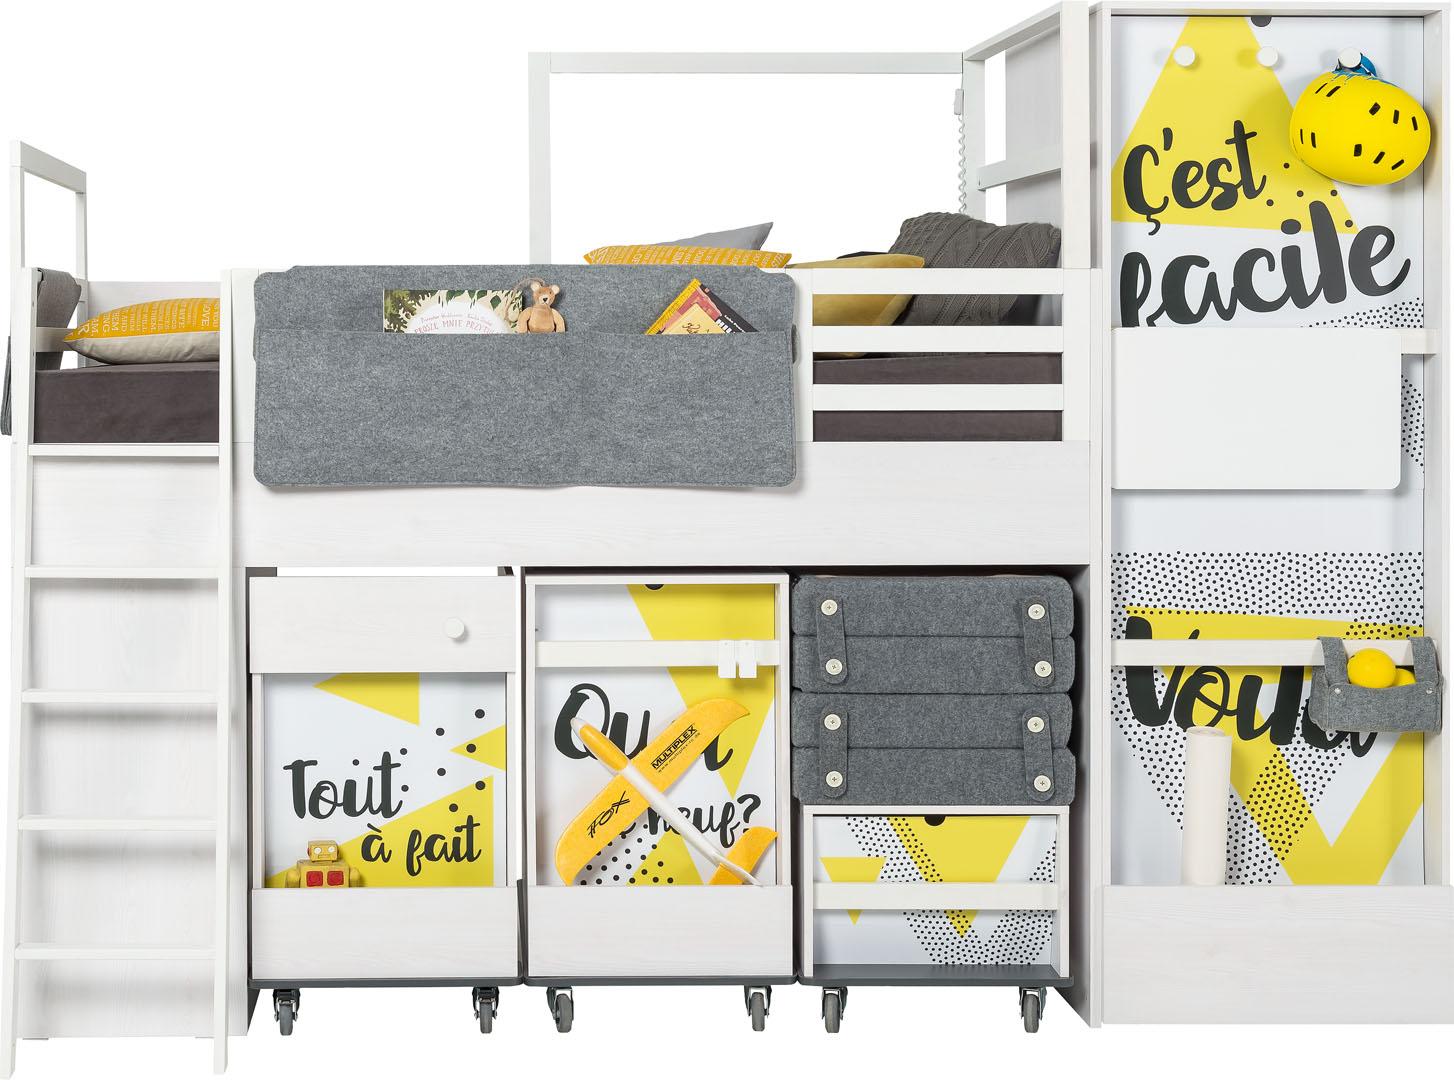 Overlay Voila to multi bed desk Nest